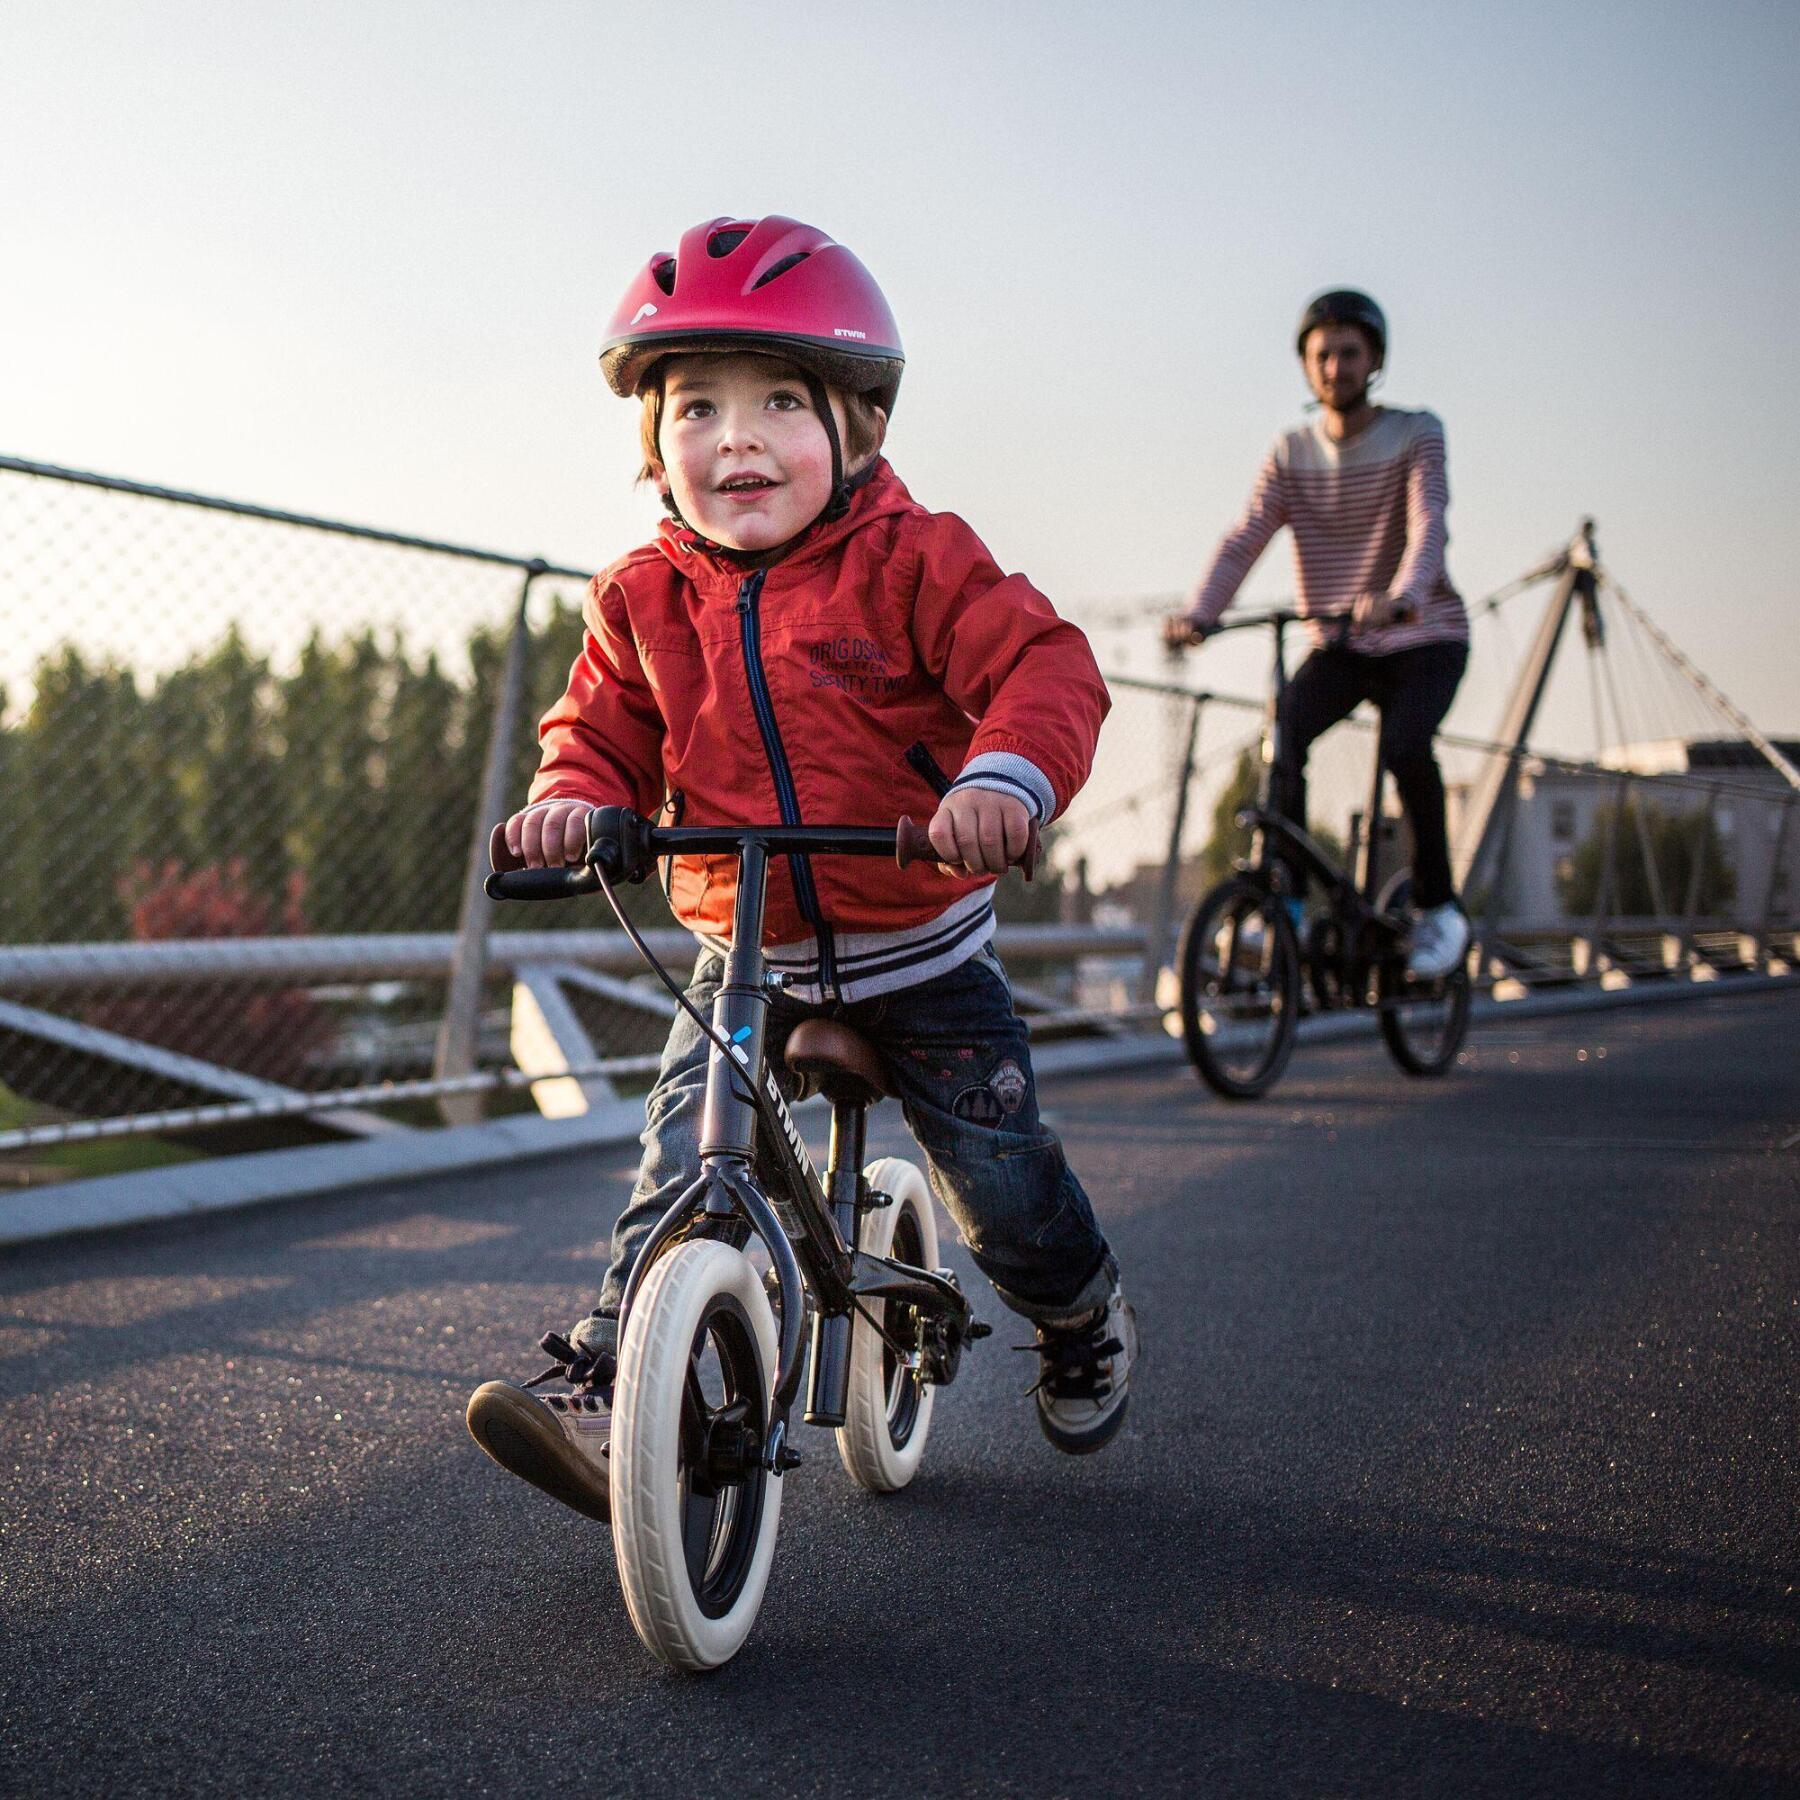 Hoe kan ik mijn kind met een loopfiets leren rijden?